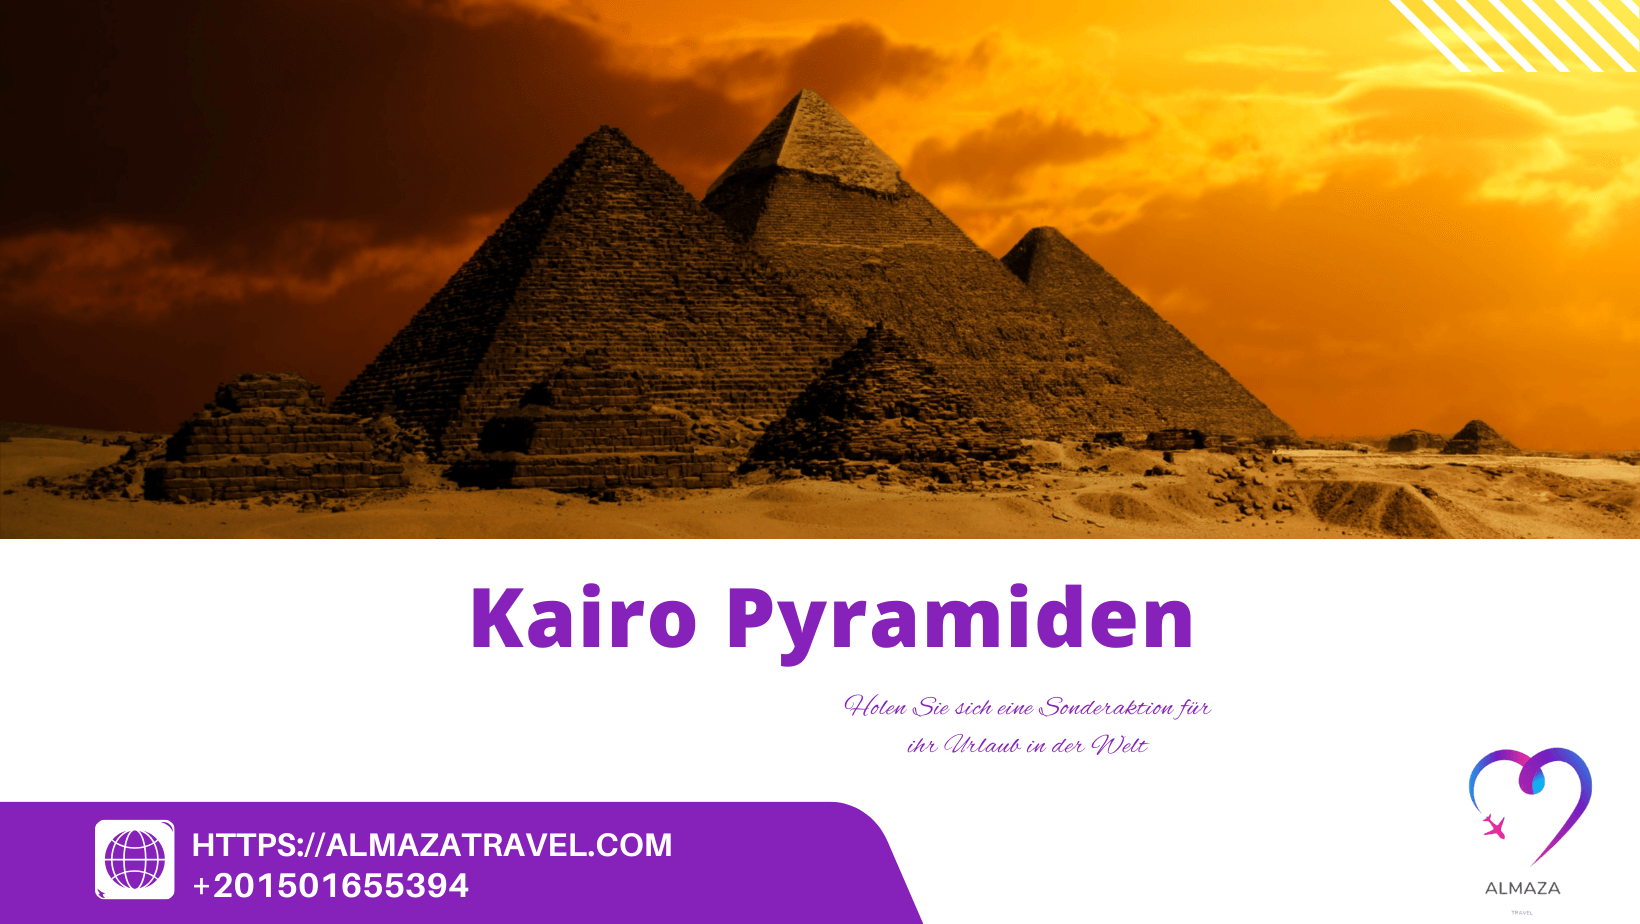 Kairo pyramiden